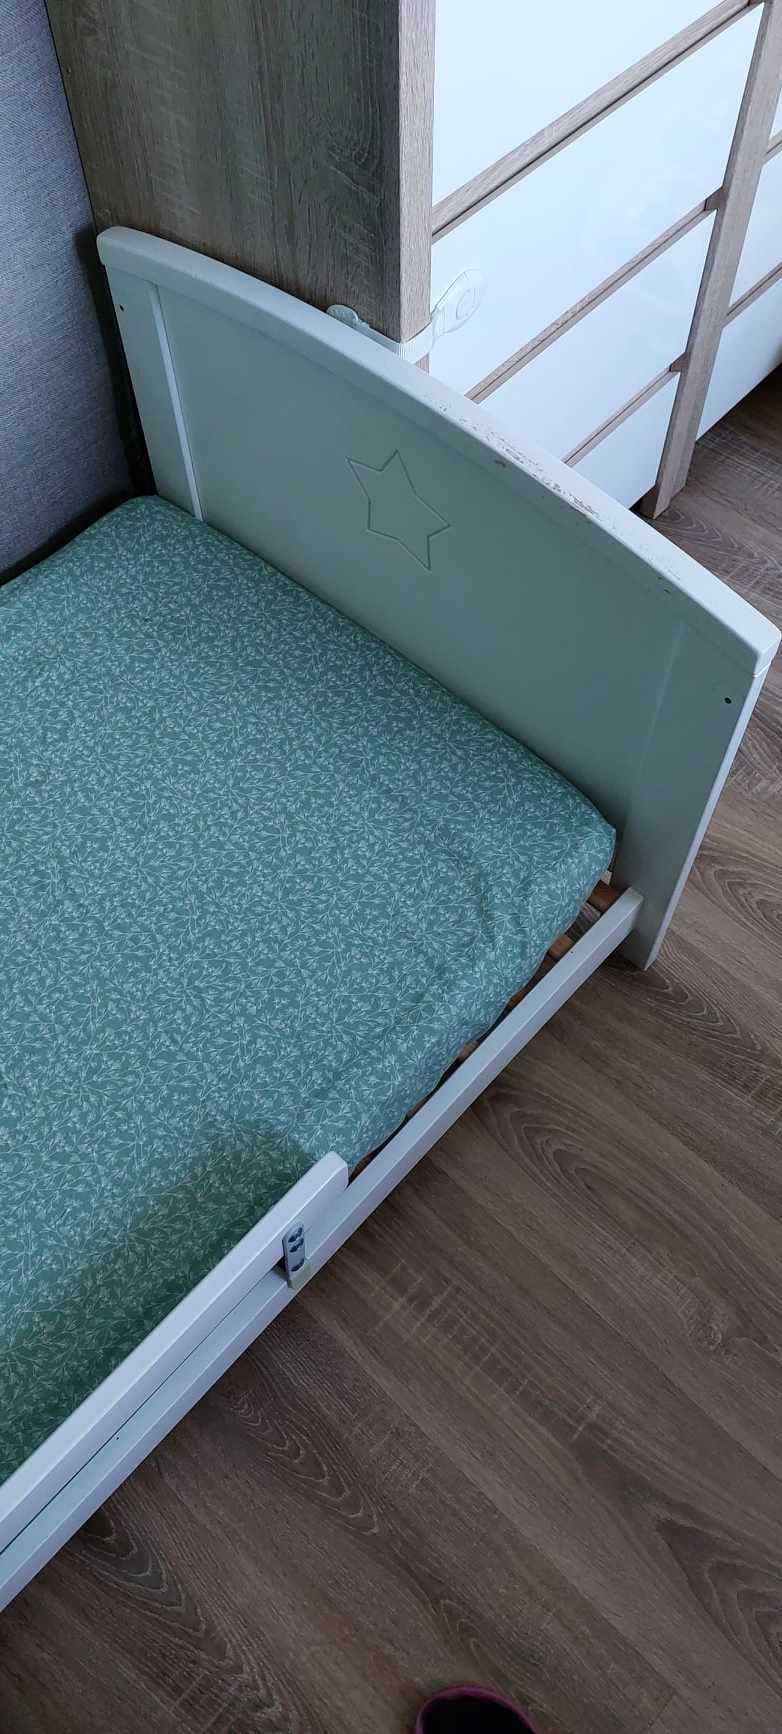 Łóżeczko dziecięce Woodies Starlight Cot Bed 140 × 70 cm – 2 w 1